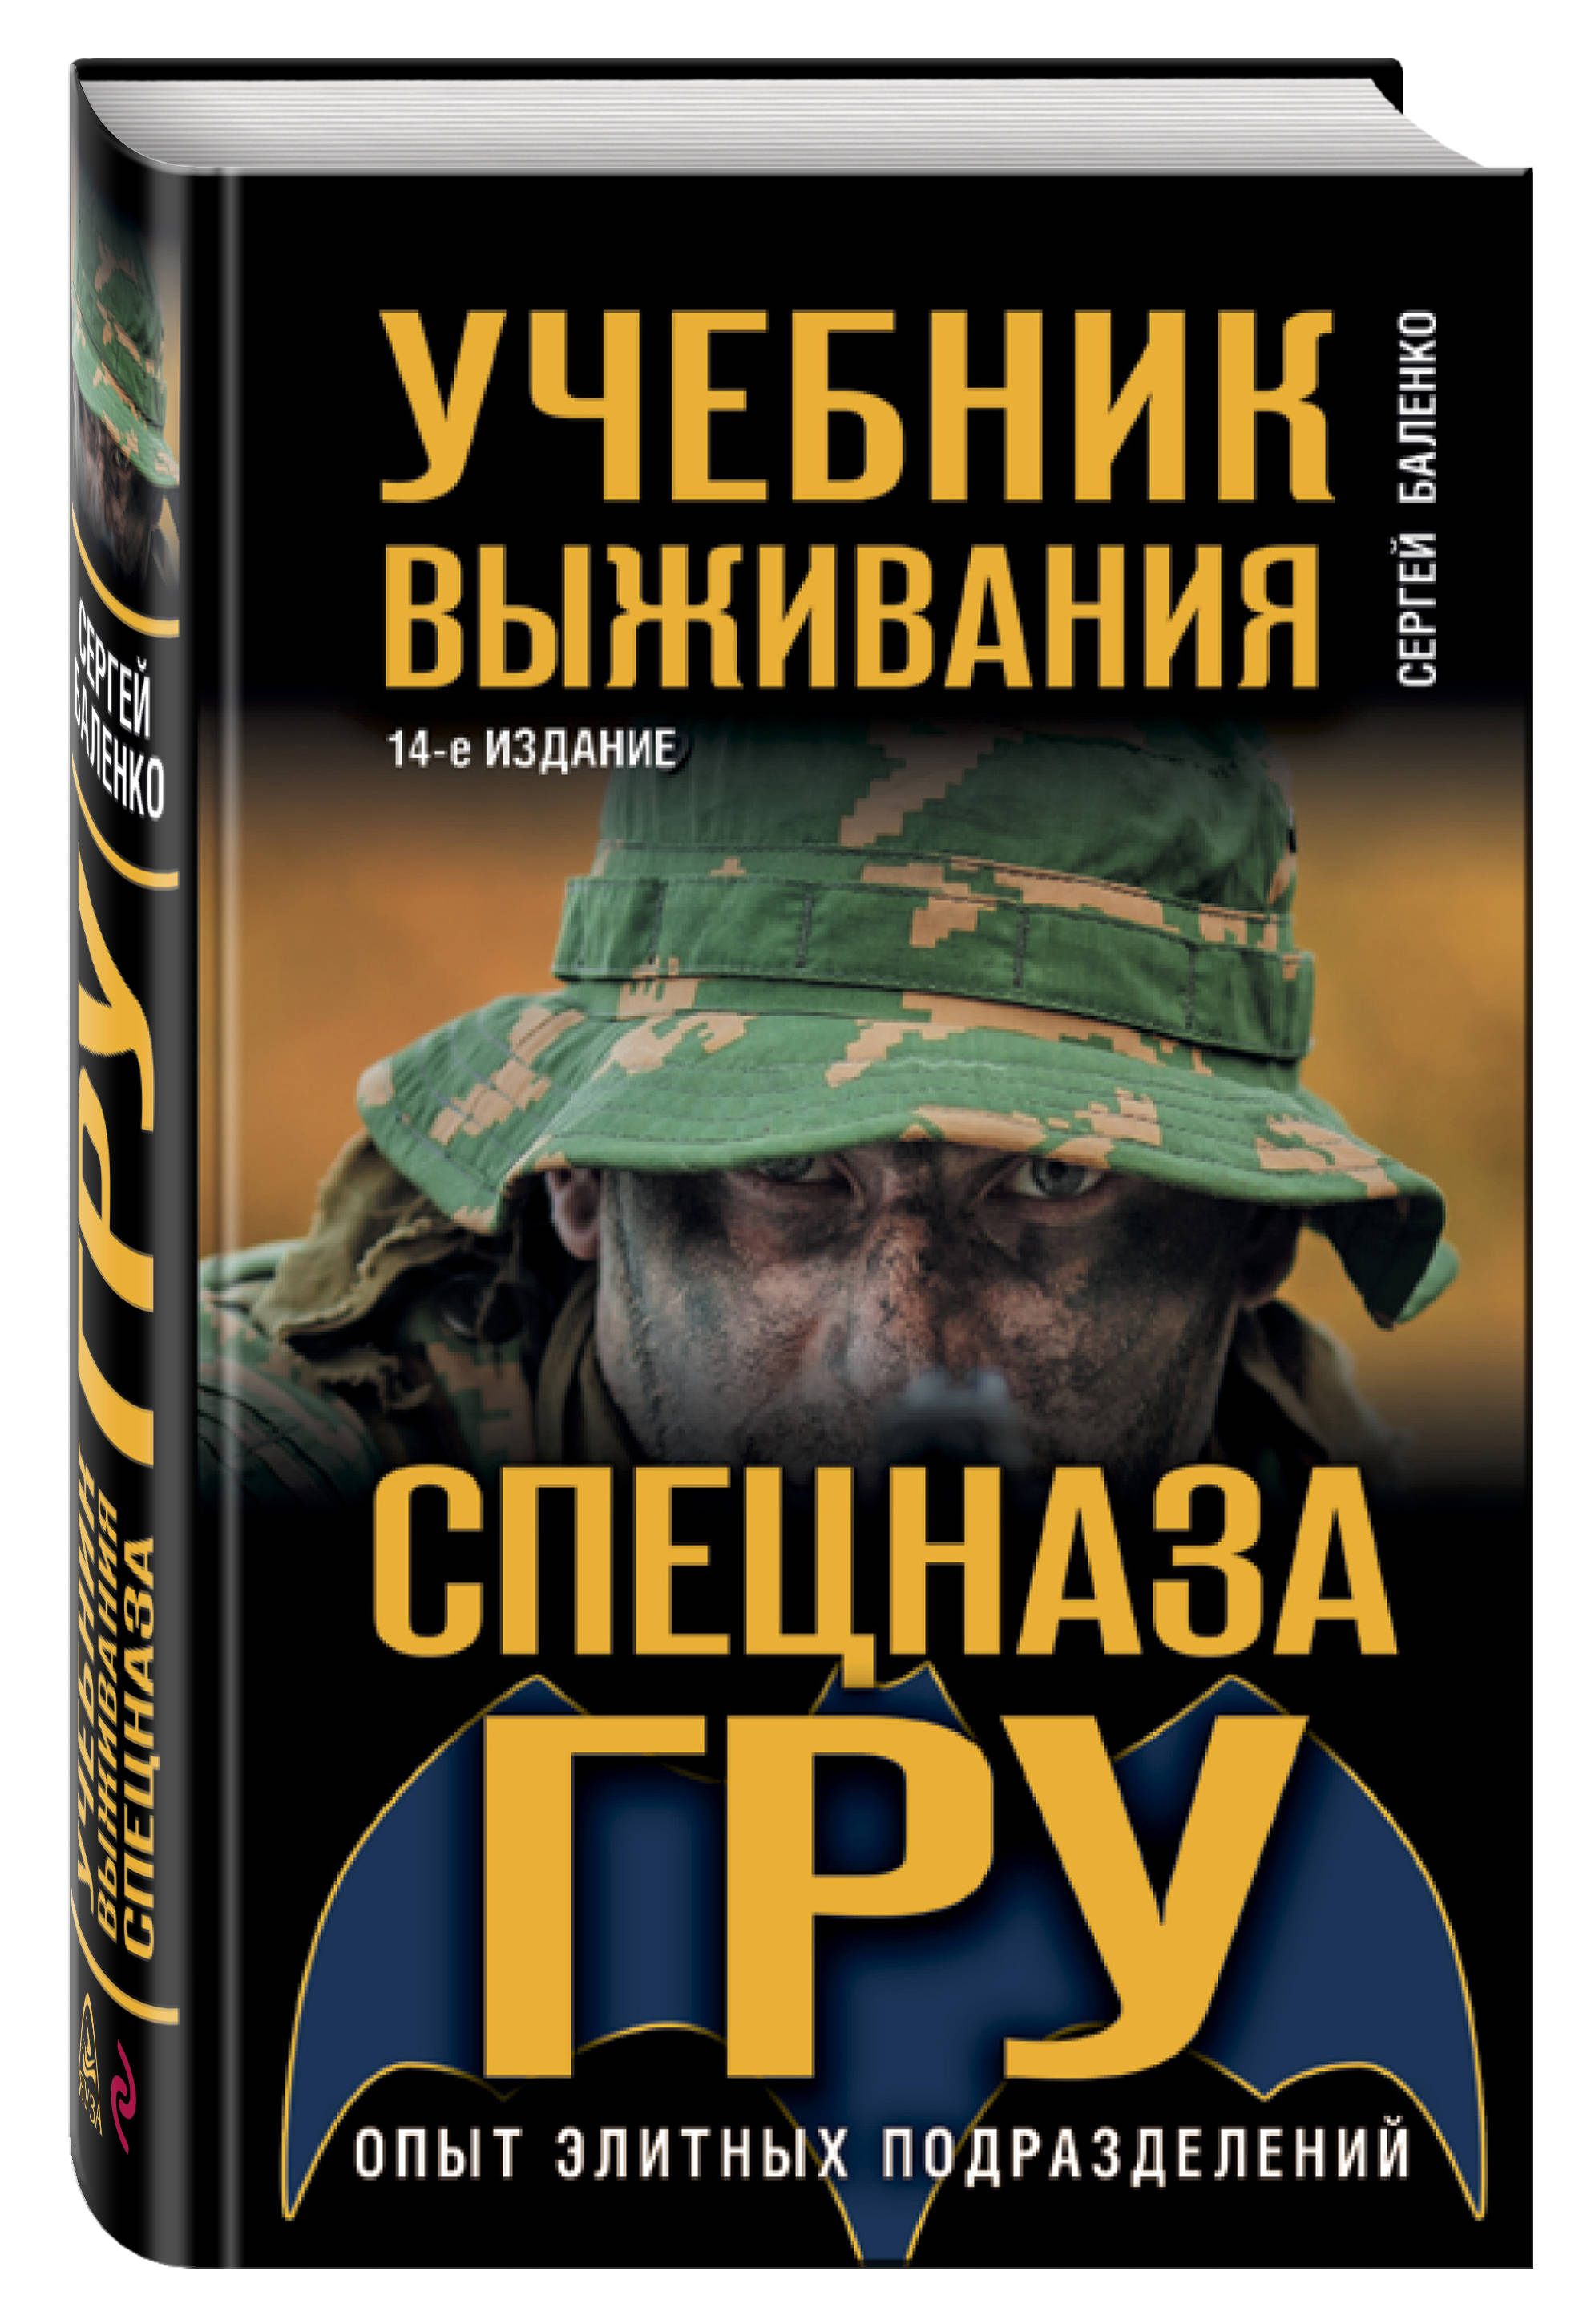 Учебник выживания спецназа ГРУ: Опыт элитных подразделений (14-е издание)